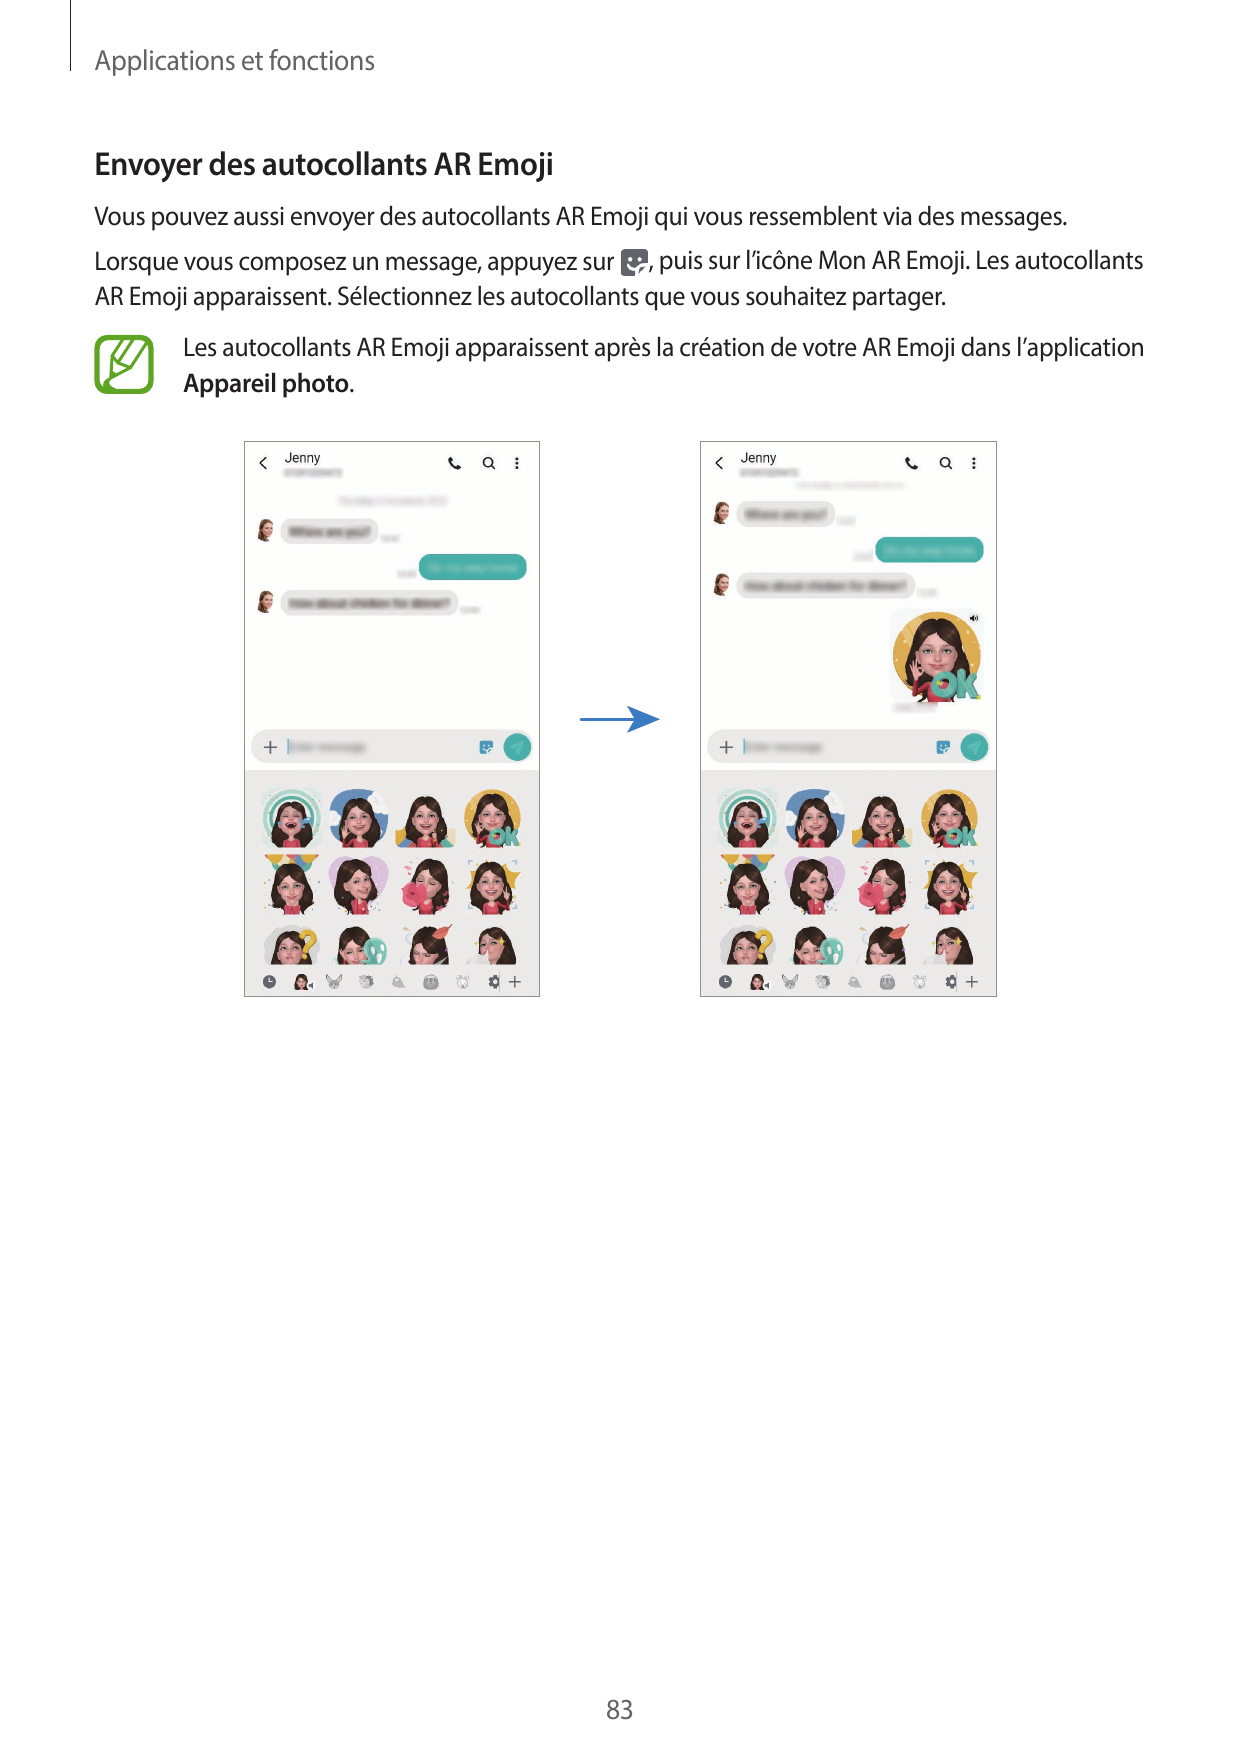 Applications et fonctionsEnvoyer des autocollants AR EmojiVous pouvez aussi envoyer des autocollants AR Emoji qui vous ressemble